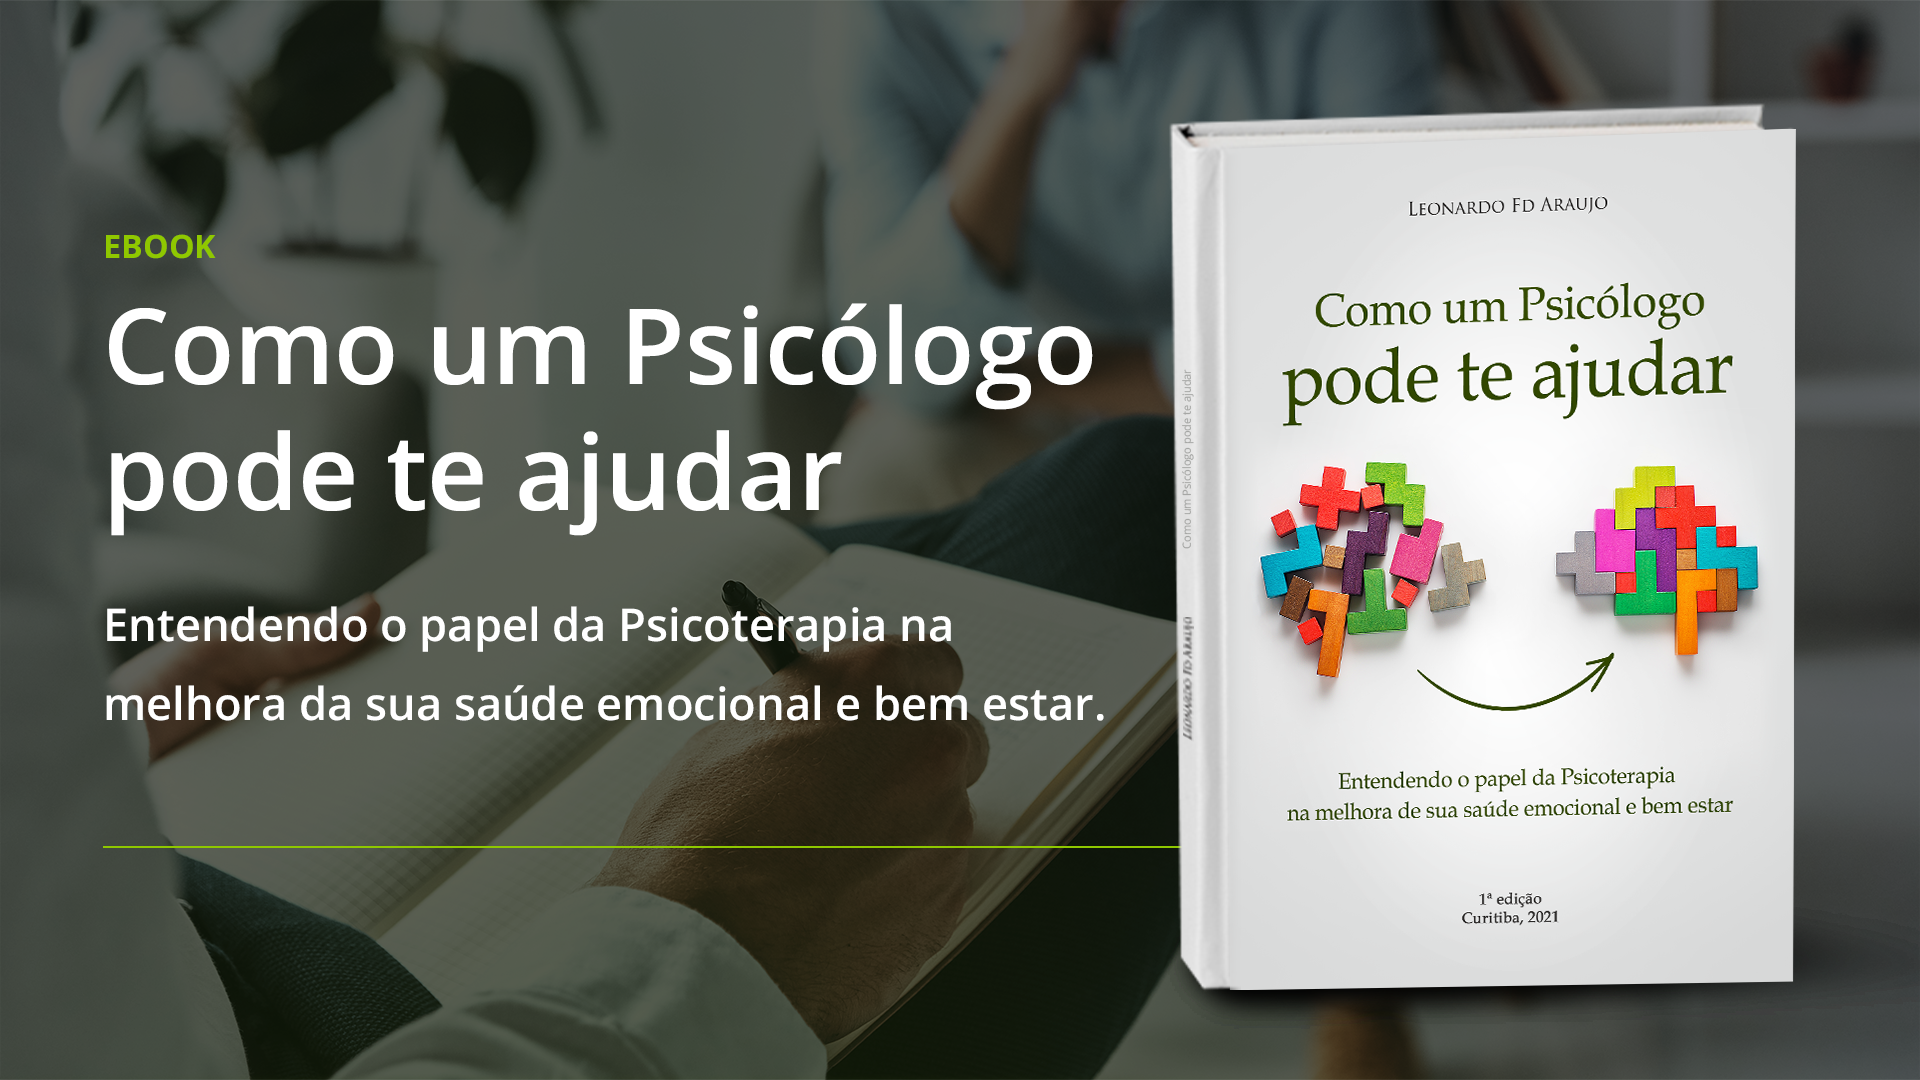 Ebook gratuito Como um Psicólogo pode te ajudar Leonardo Fd Araujo